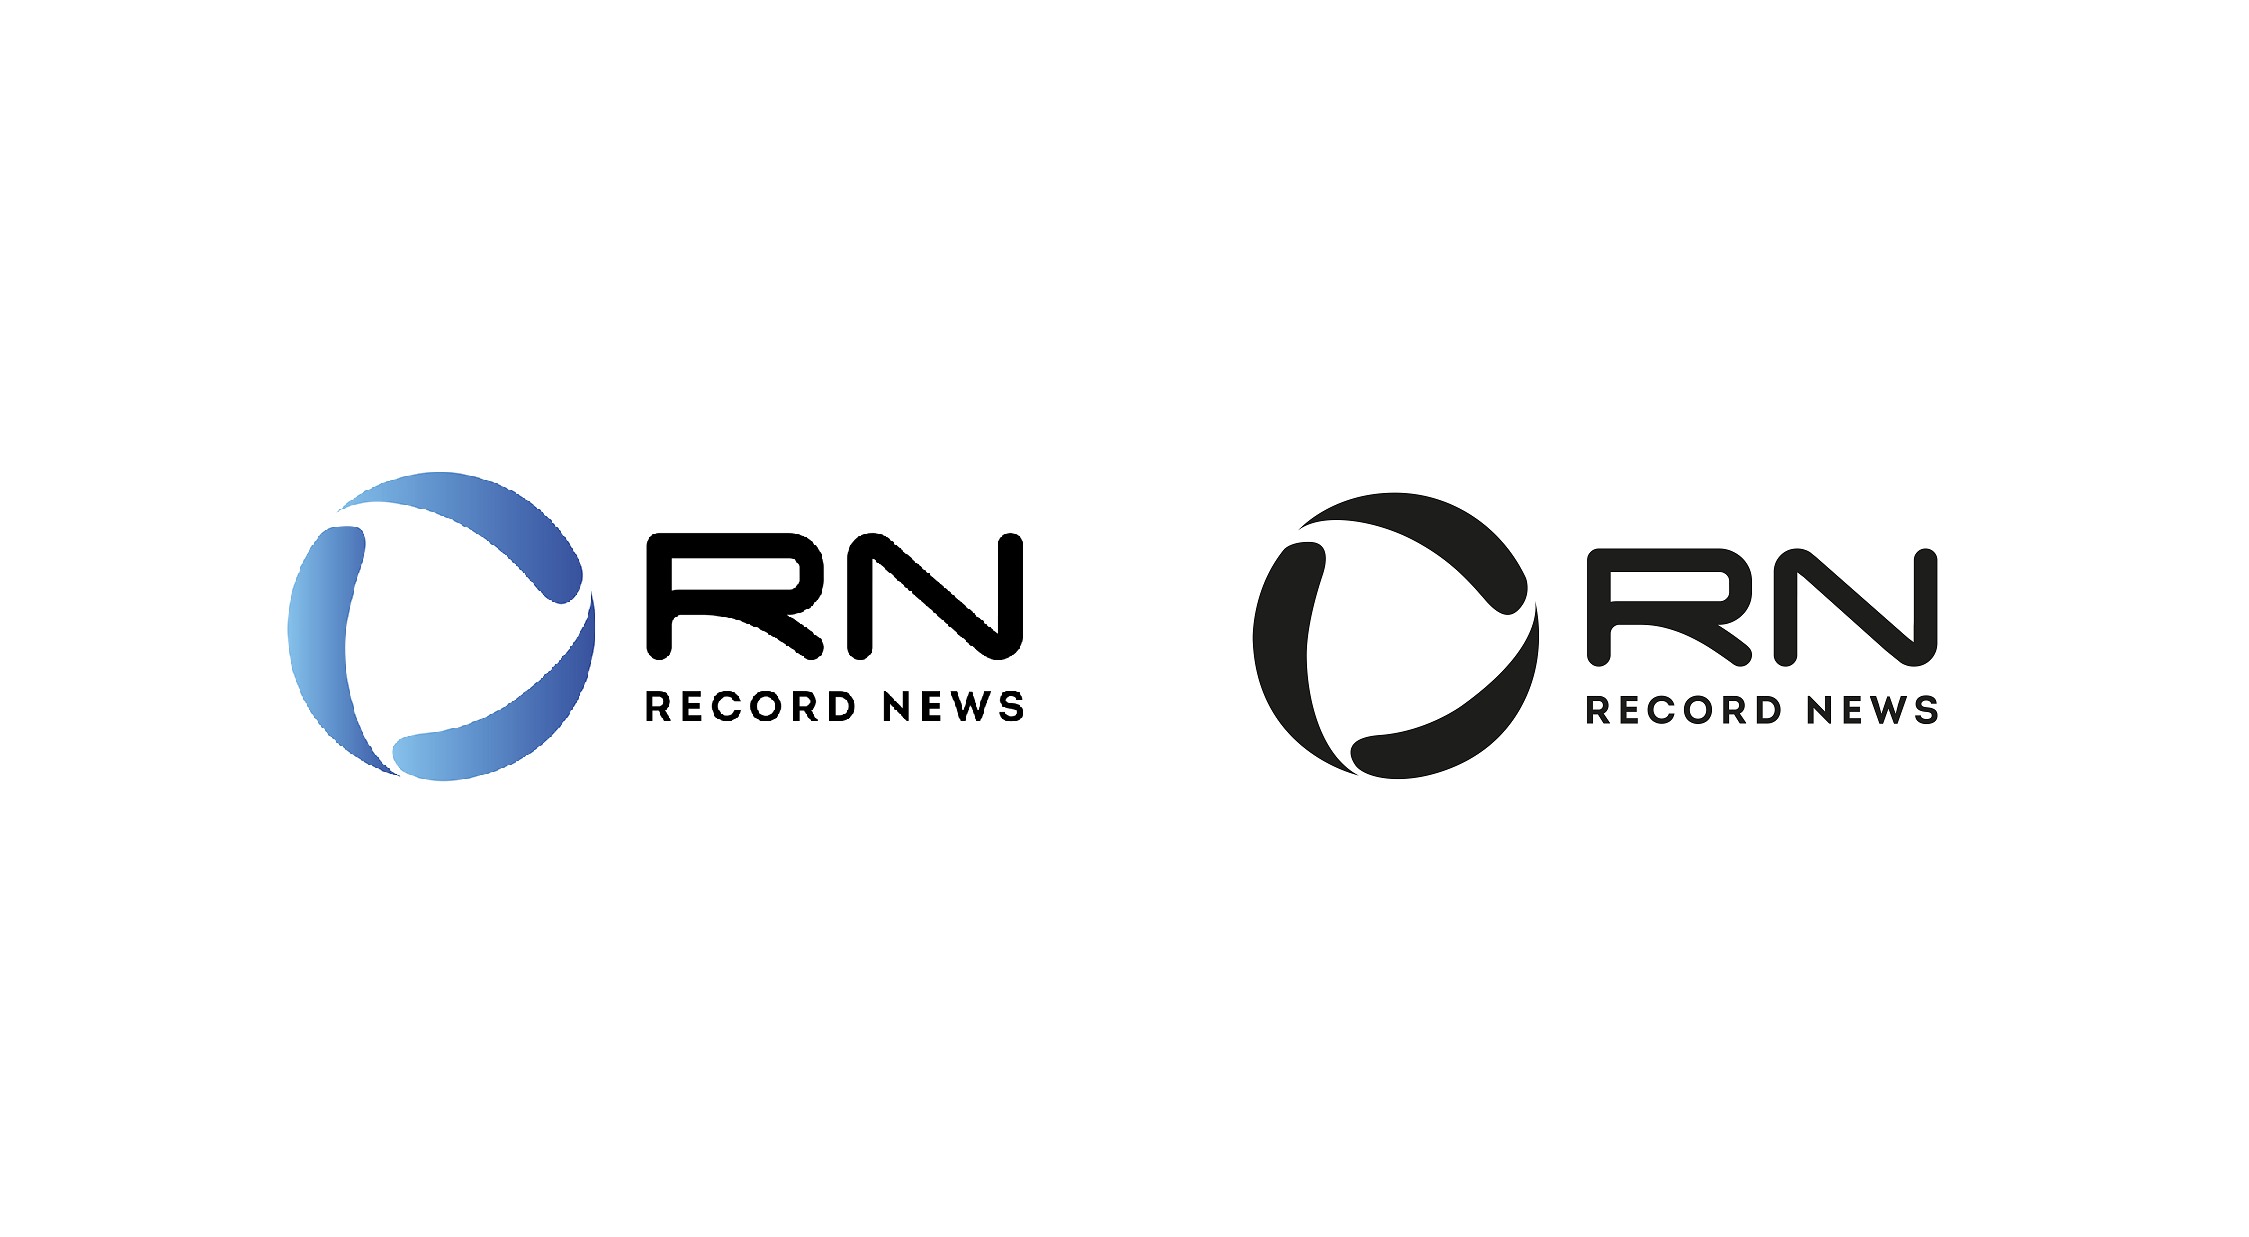 Record News apresenta novo posicionamento e identidade visual